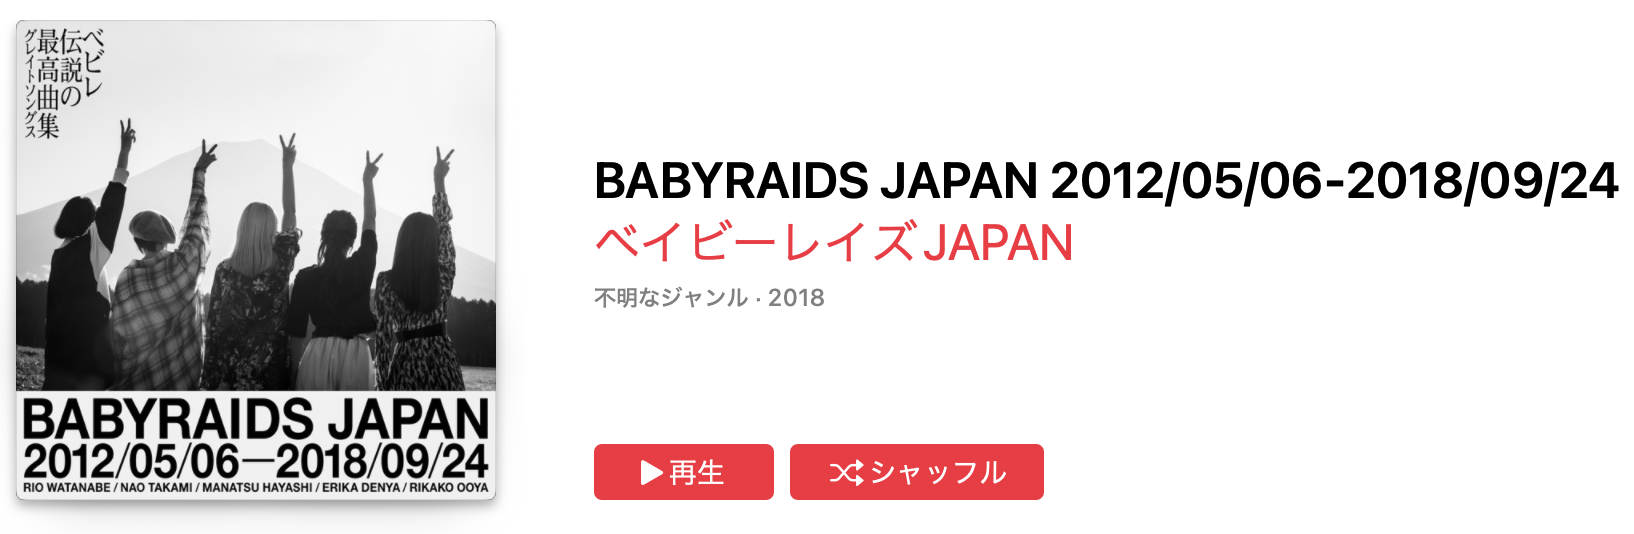 ベイビーレイズ JAPAN - 夜明け Brand New Days